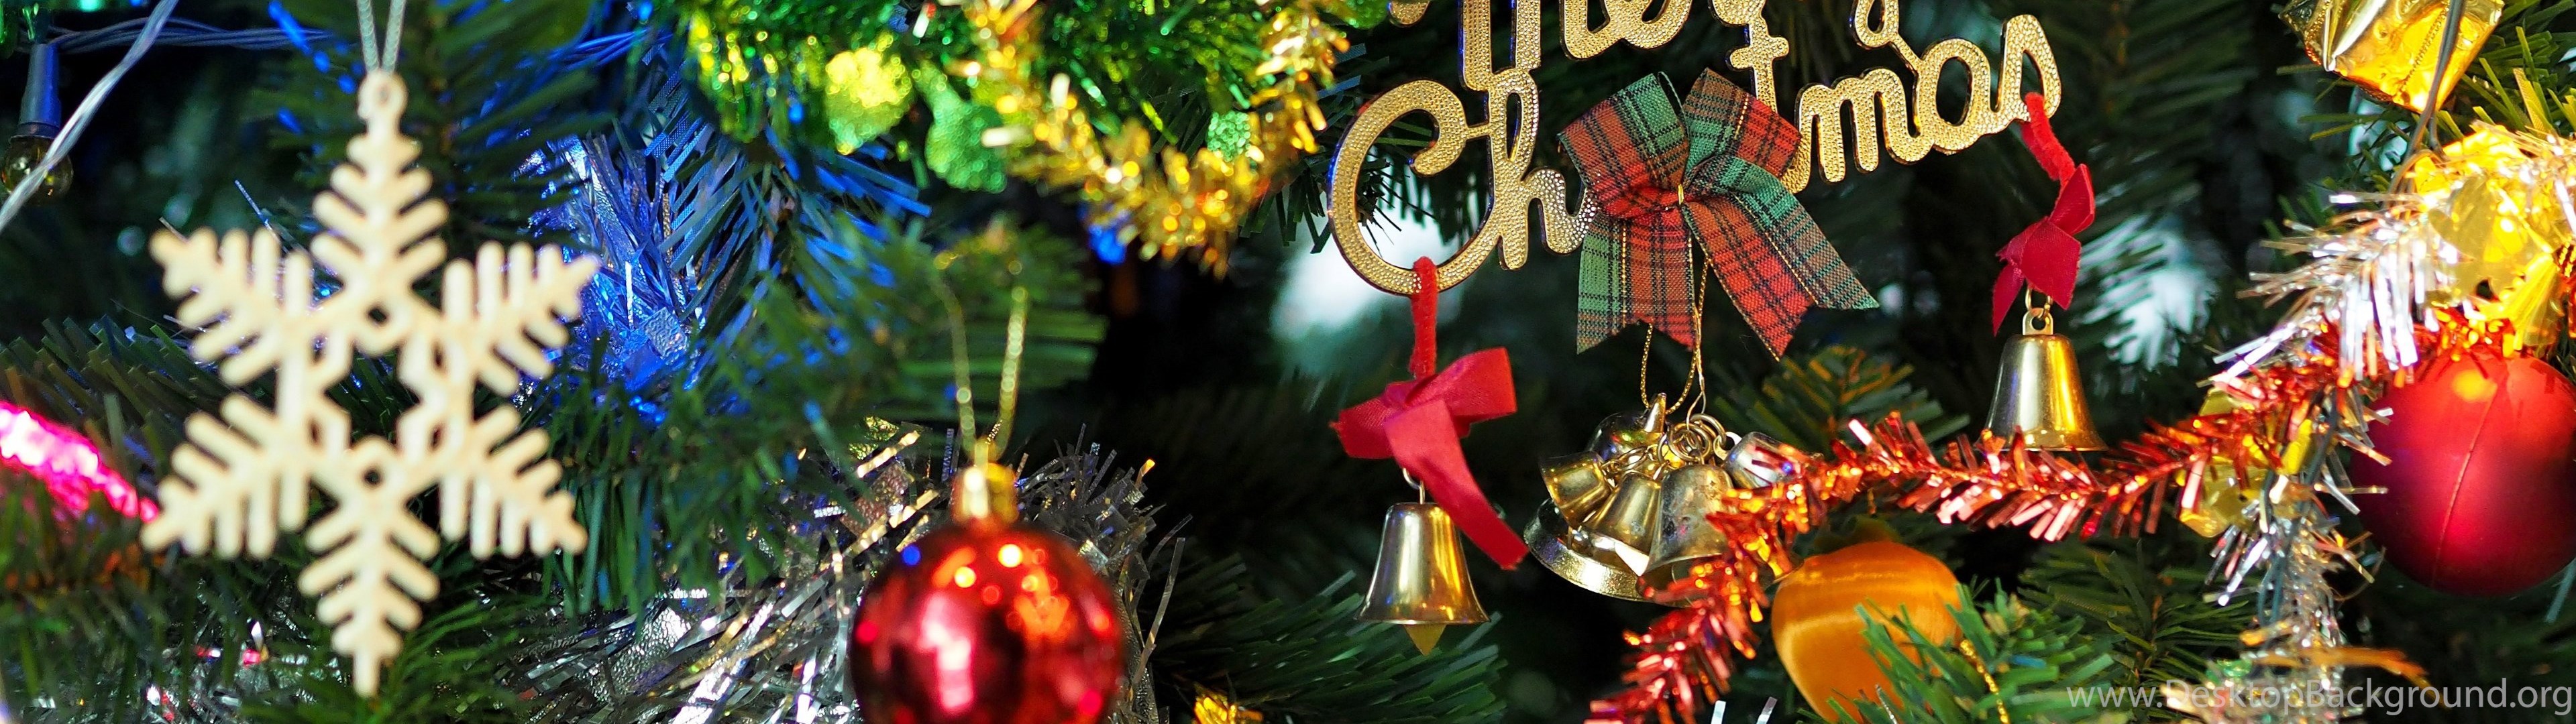 デュアルモニターのクリスマスの壁紙,クリスマスオーナメント,クリスマスの飾り,クリスマス,クリスマスツリー,クリスマス・イブ